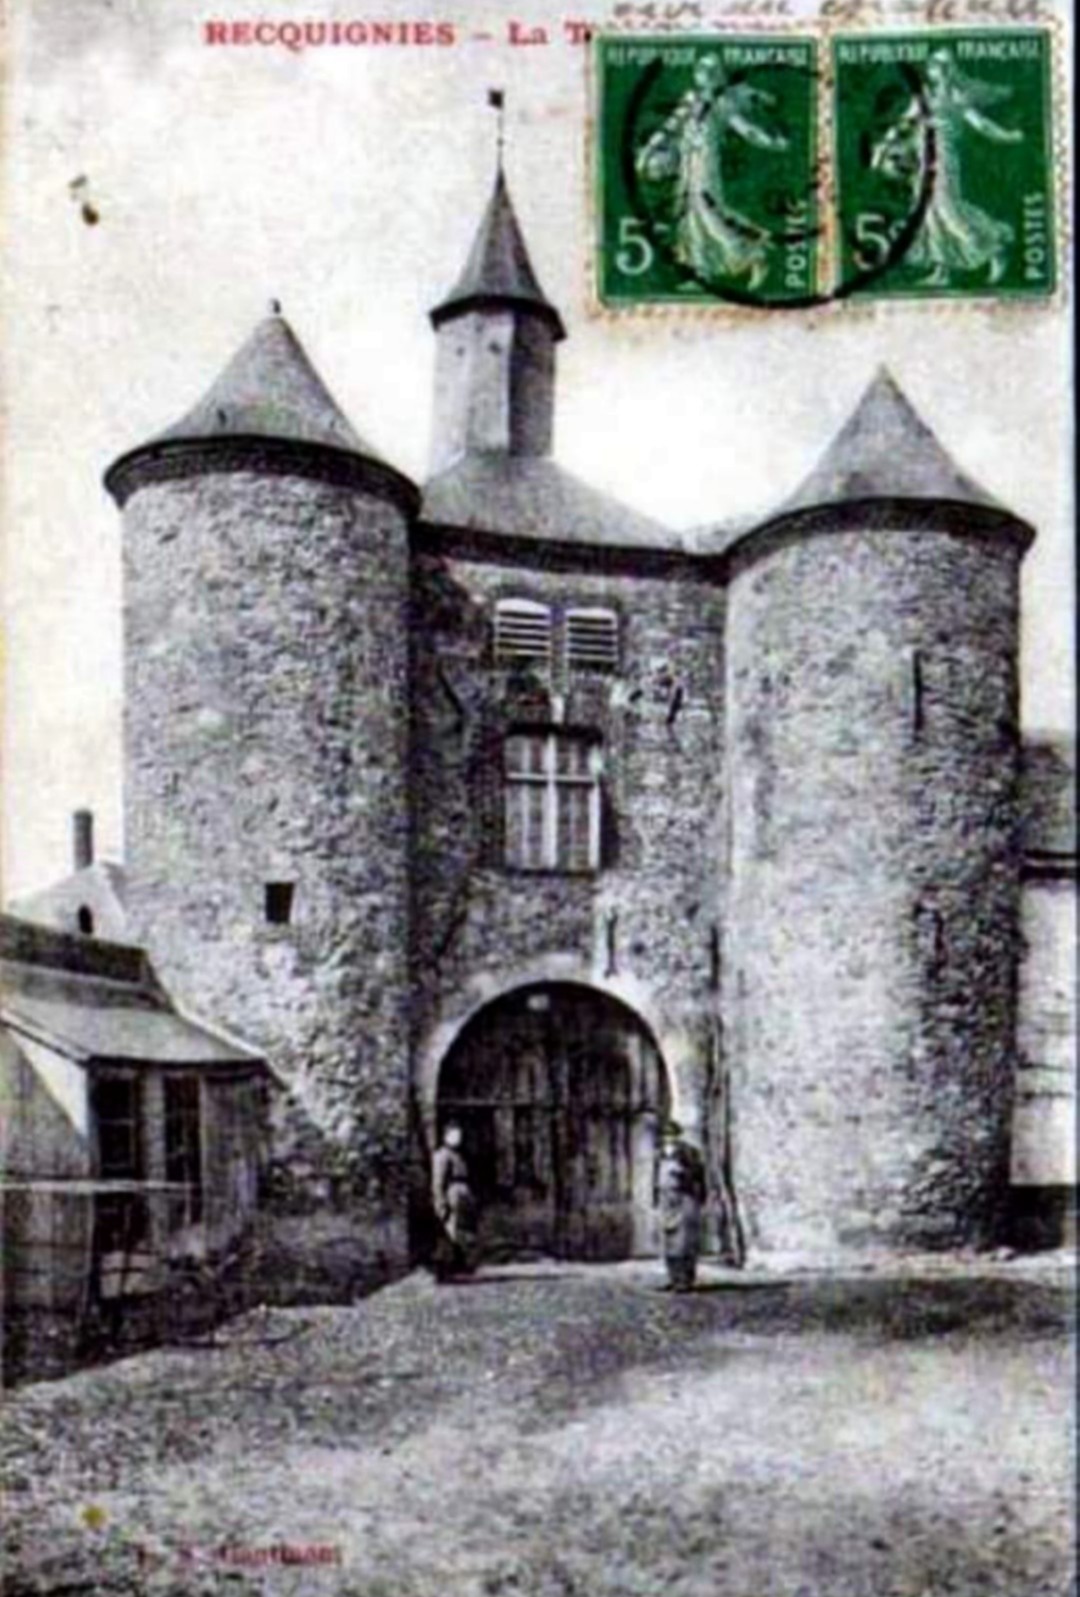 Le Château de la Carnière à Recquignies, lorsque le châtelet avait encore ses deux tours.